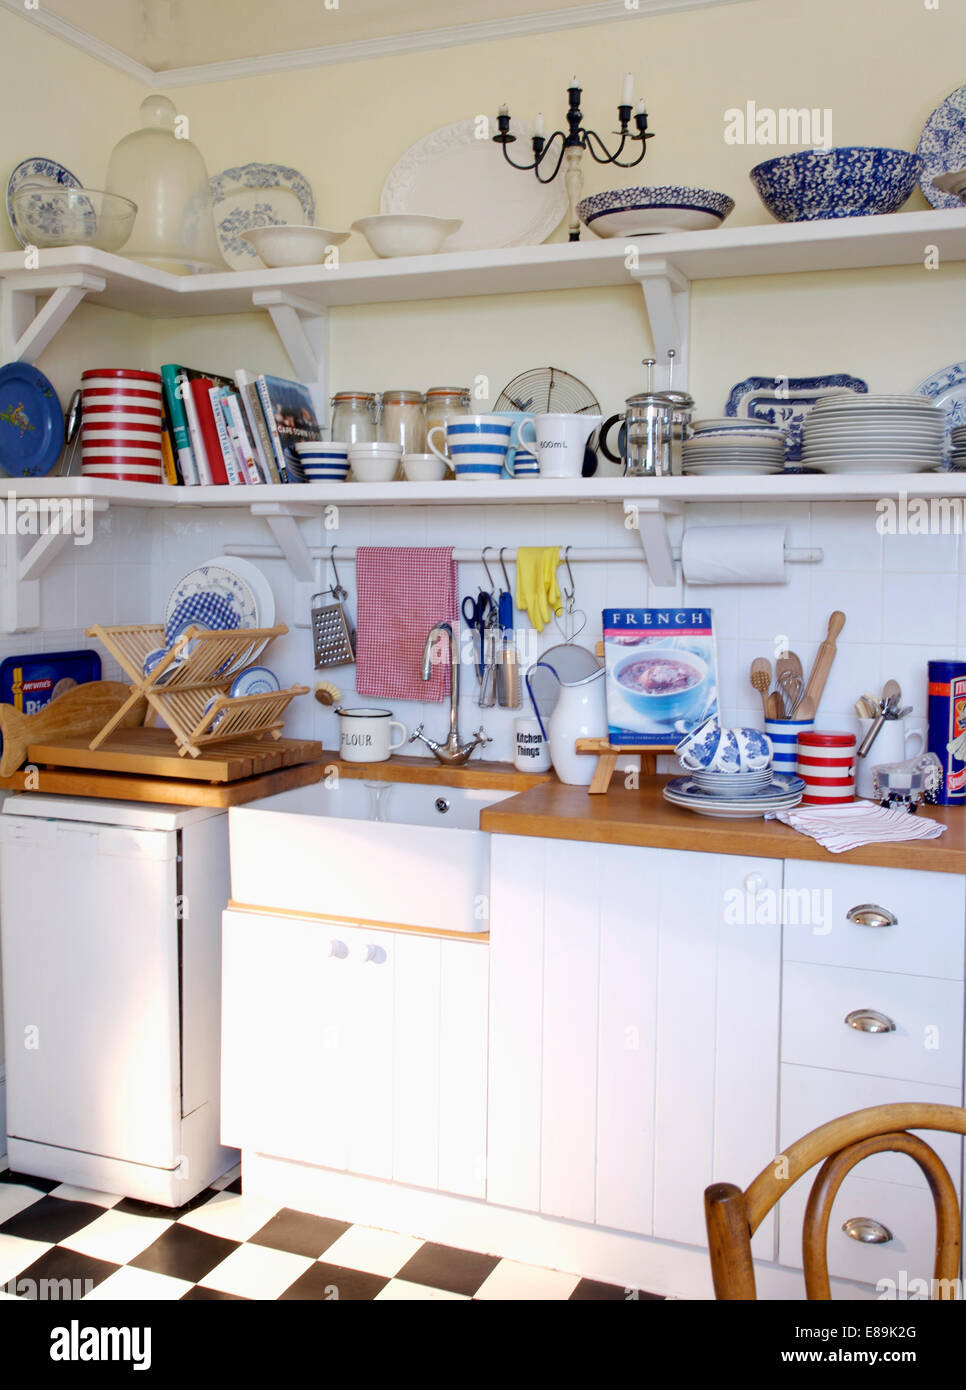 https://c8.alamy.com/comp/E89K2G/crockery-on-shelves-above-white-ceramic-sink-in-white-country-kitchen-E89K2G.jpg